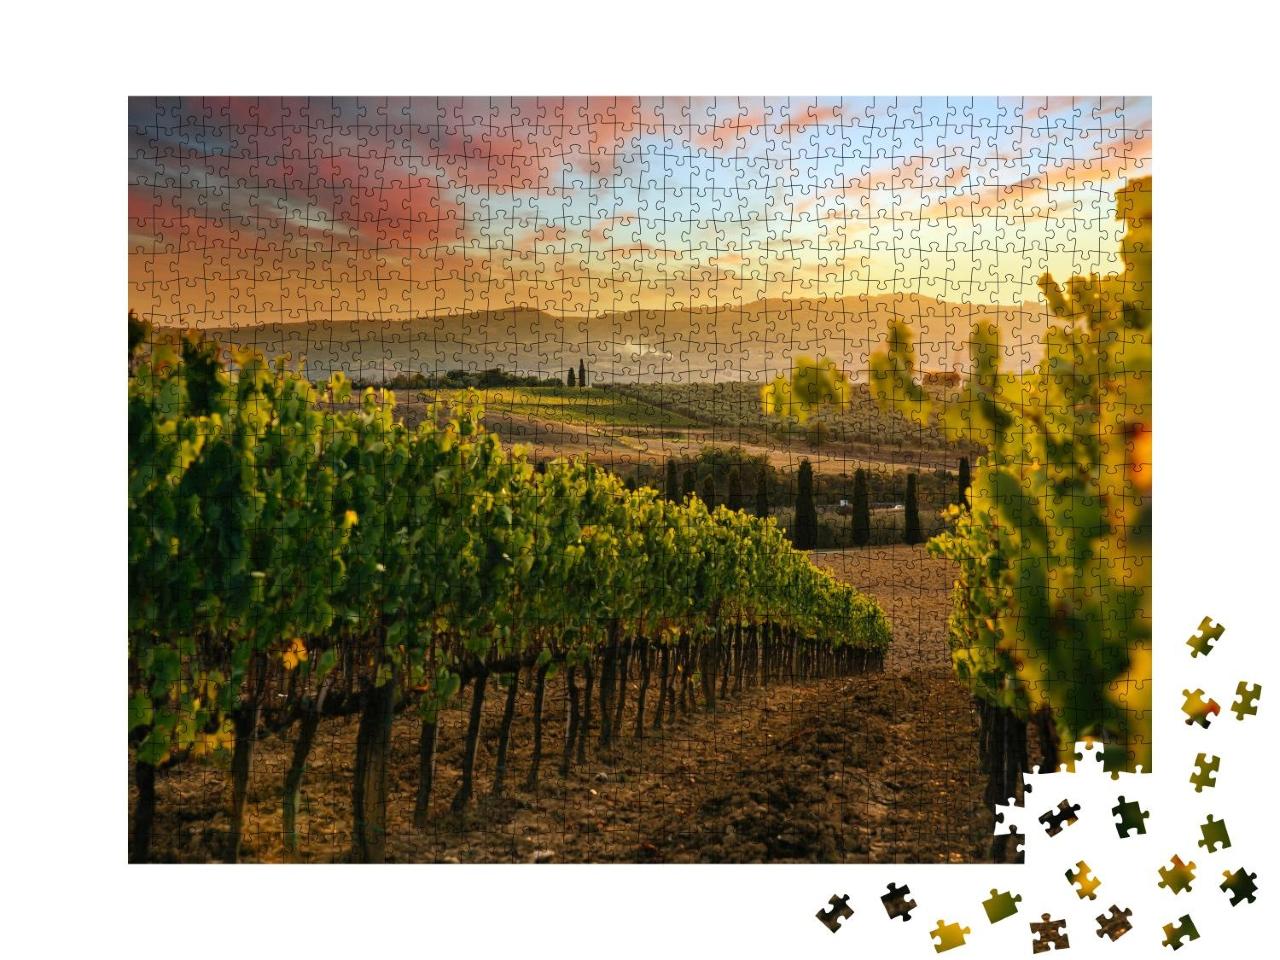 Puzzle 1000 Teile „Wunderschöner Sonnenuntergang über den Weinbergen, schöne Landschaft“